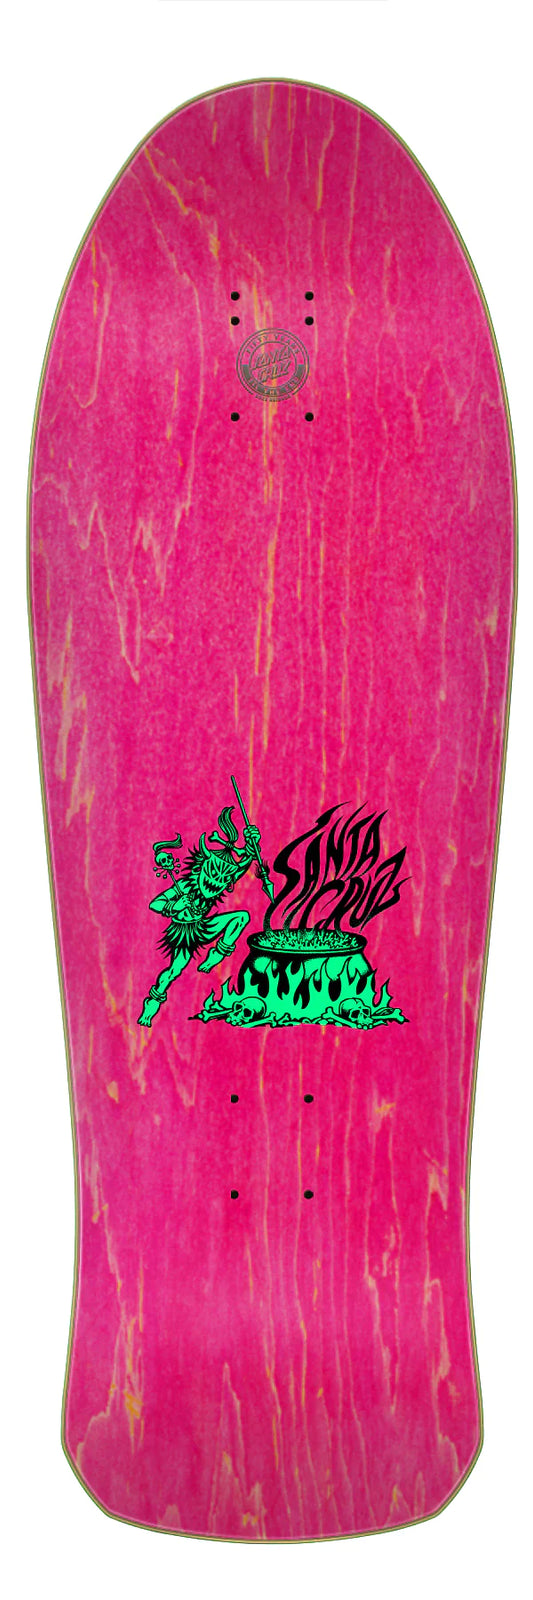 Planche de skateboard réédition Salba Tiger Santa Cruz de 10,3 pouces